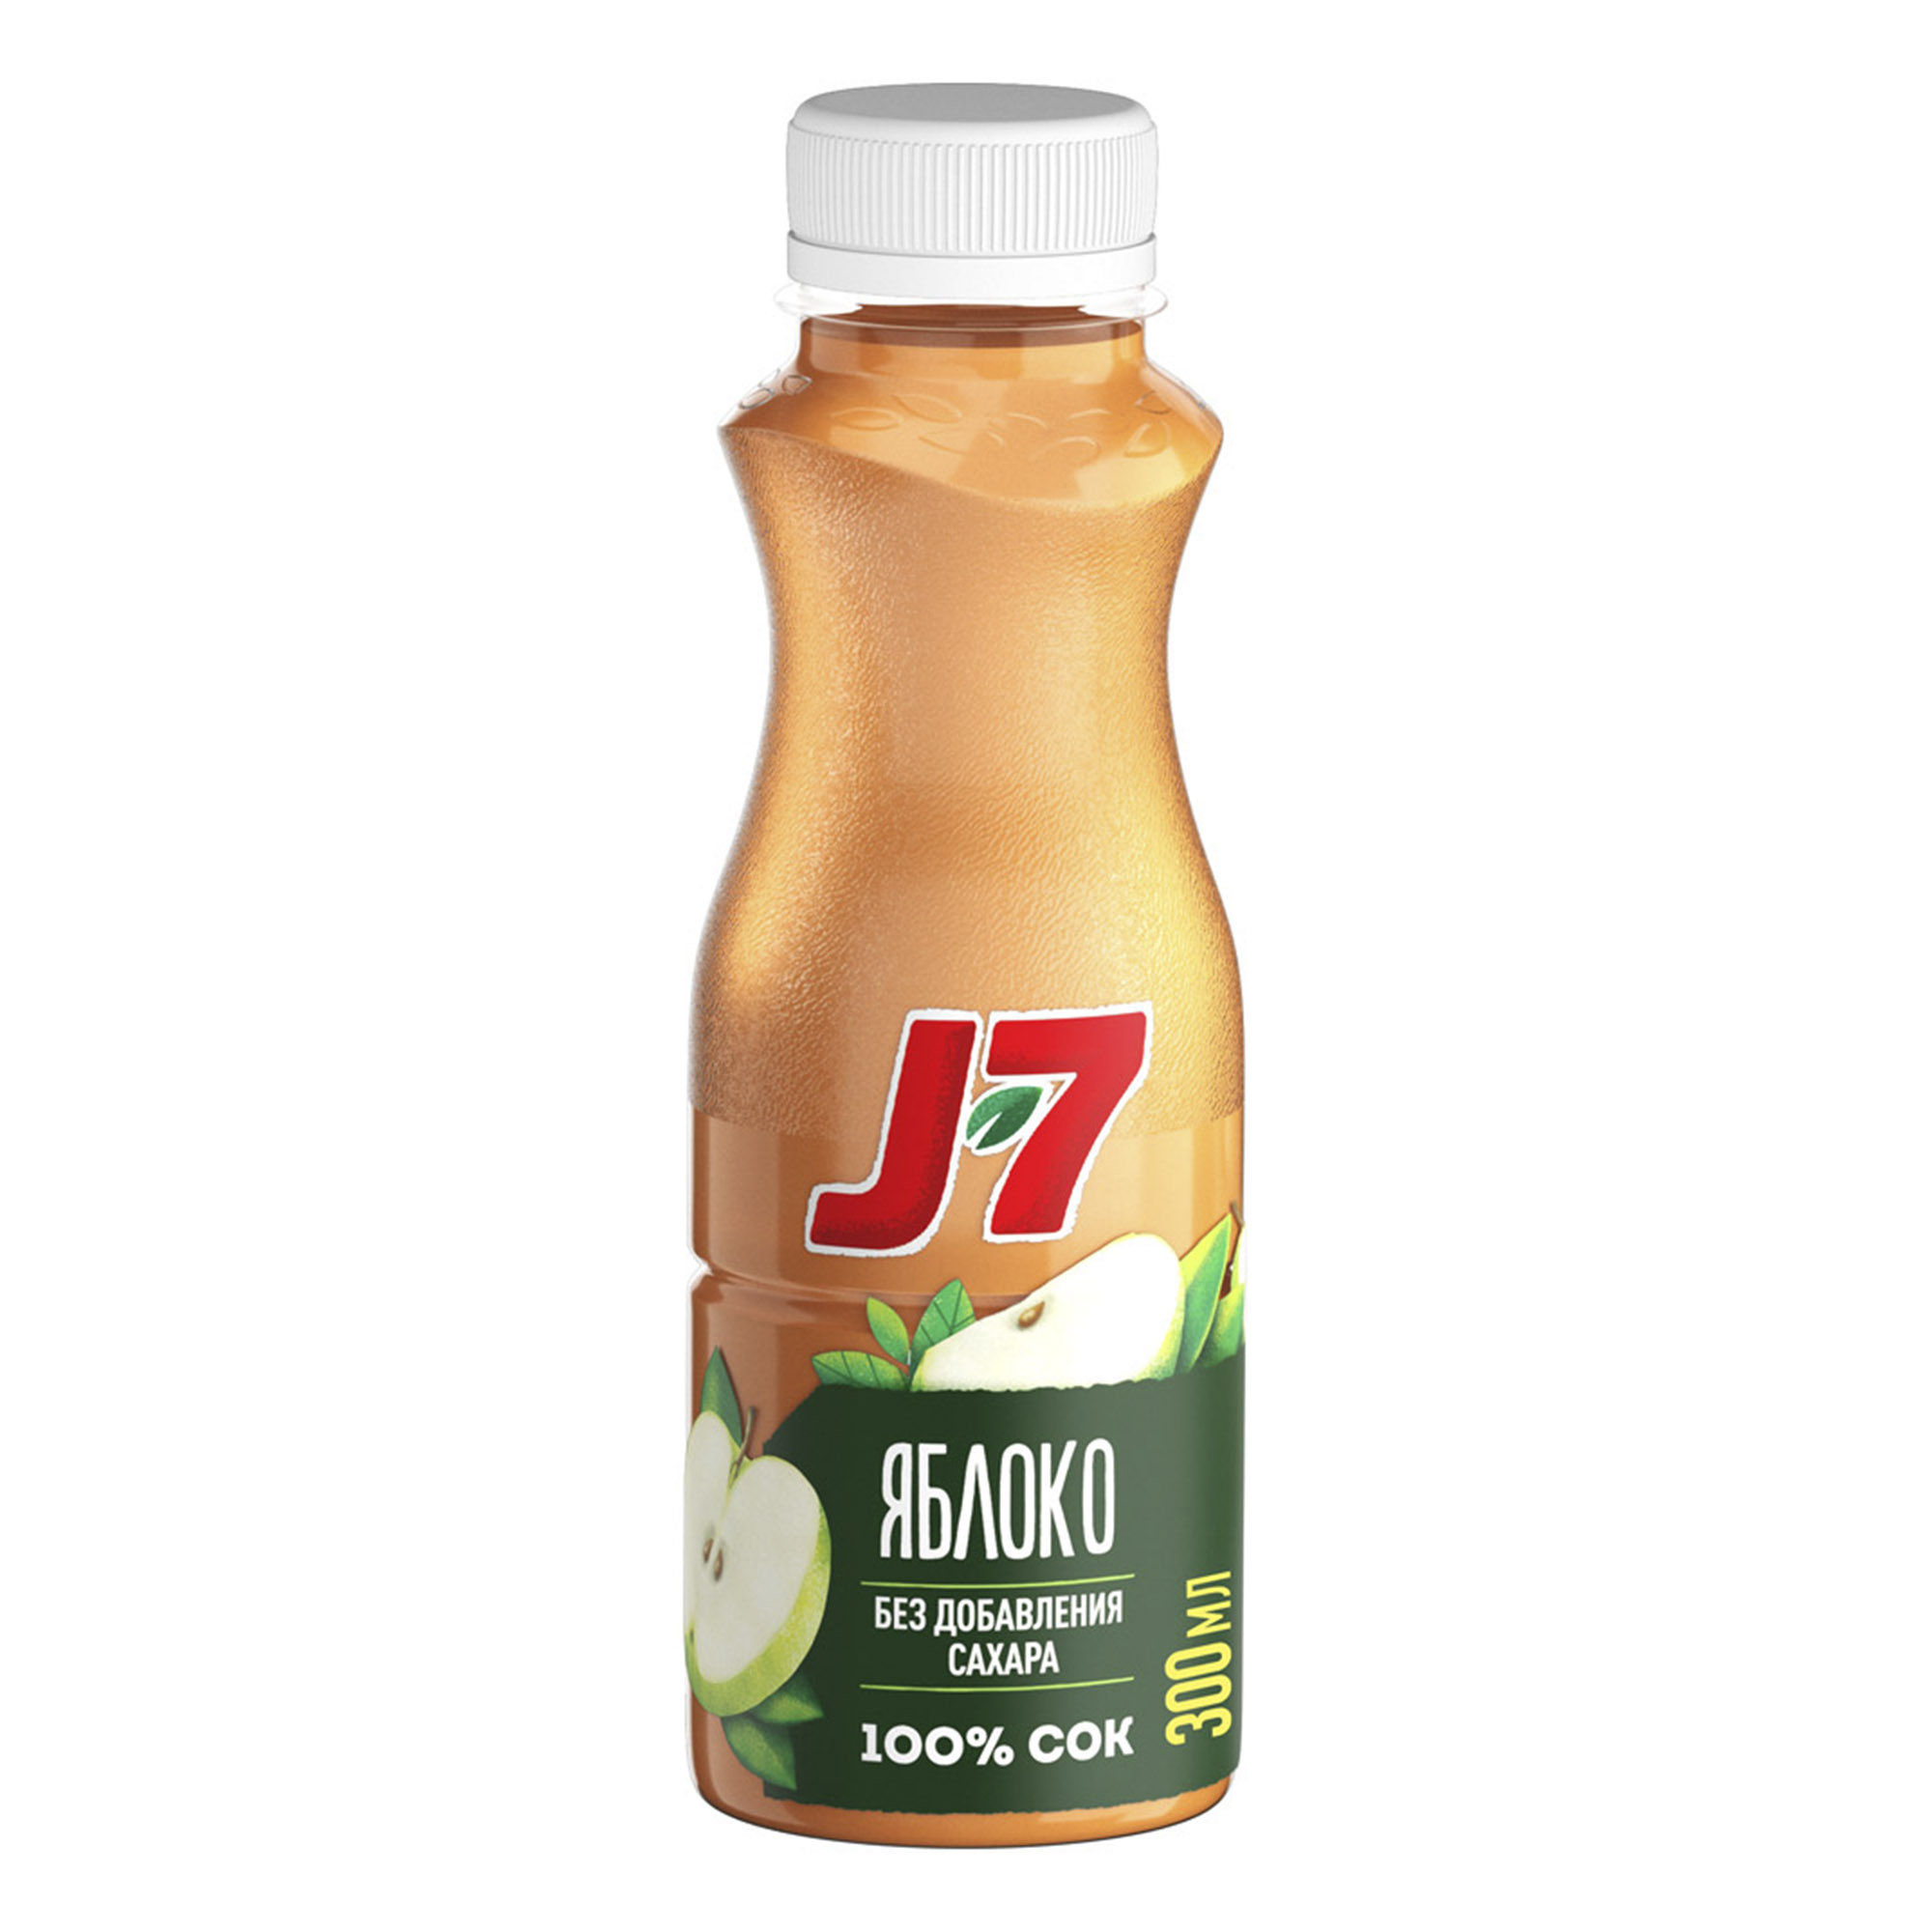 Сок J7 Яблоко 300 мл сок осветленный j7 яблоко охлаждённый 850 мл